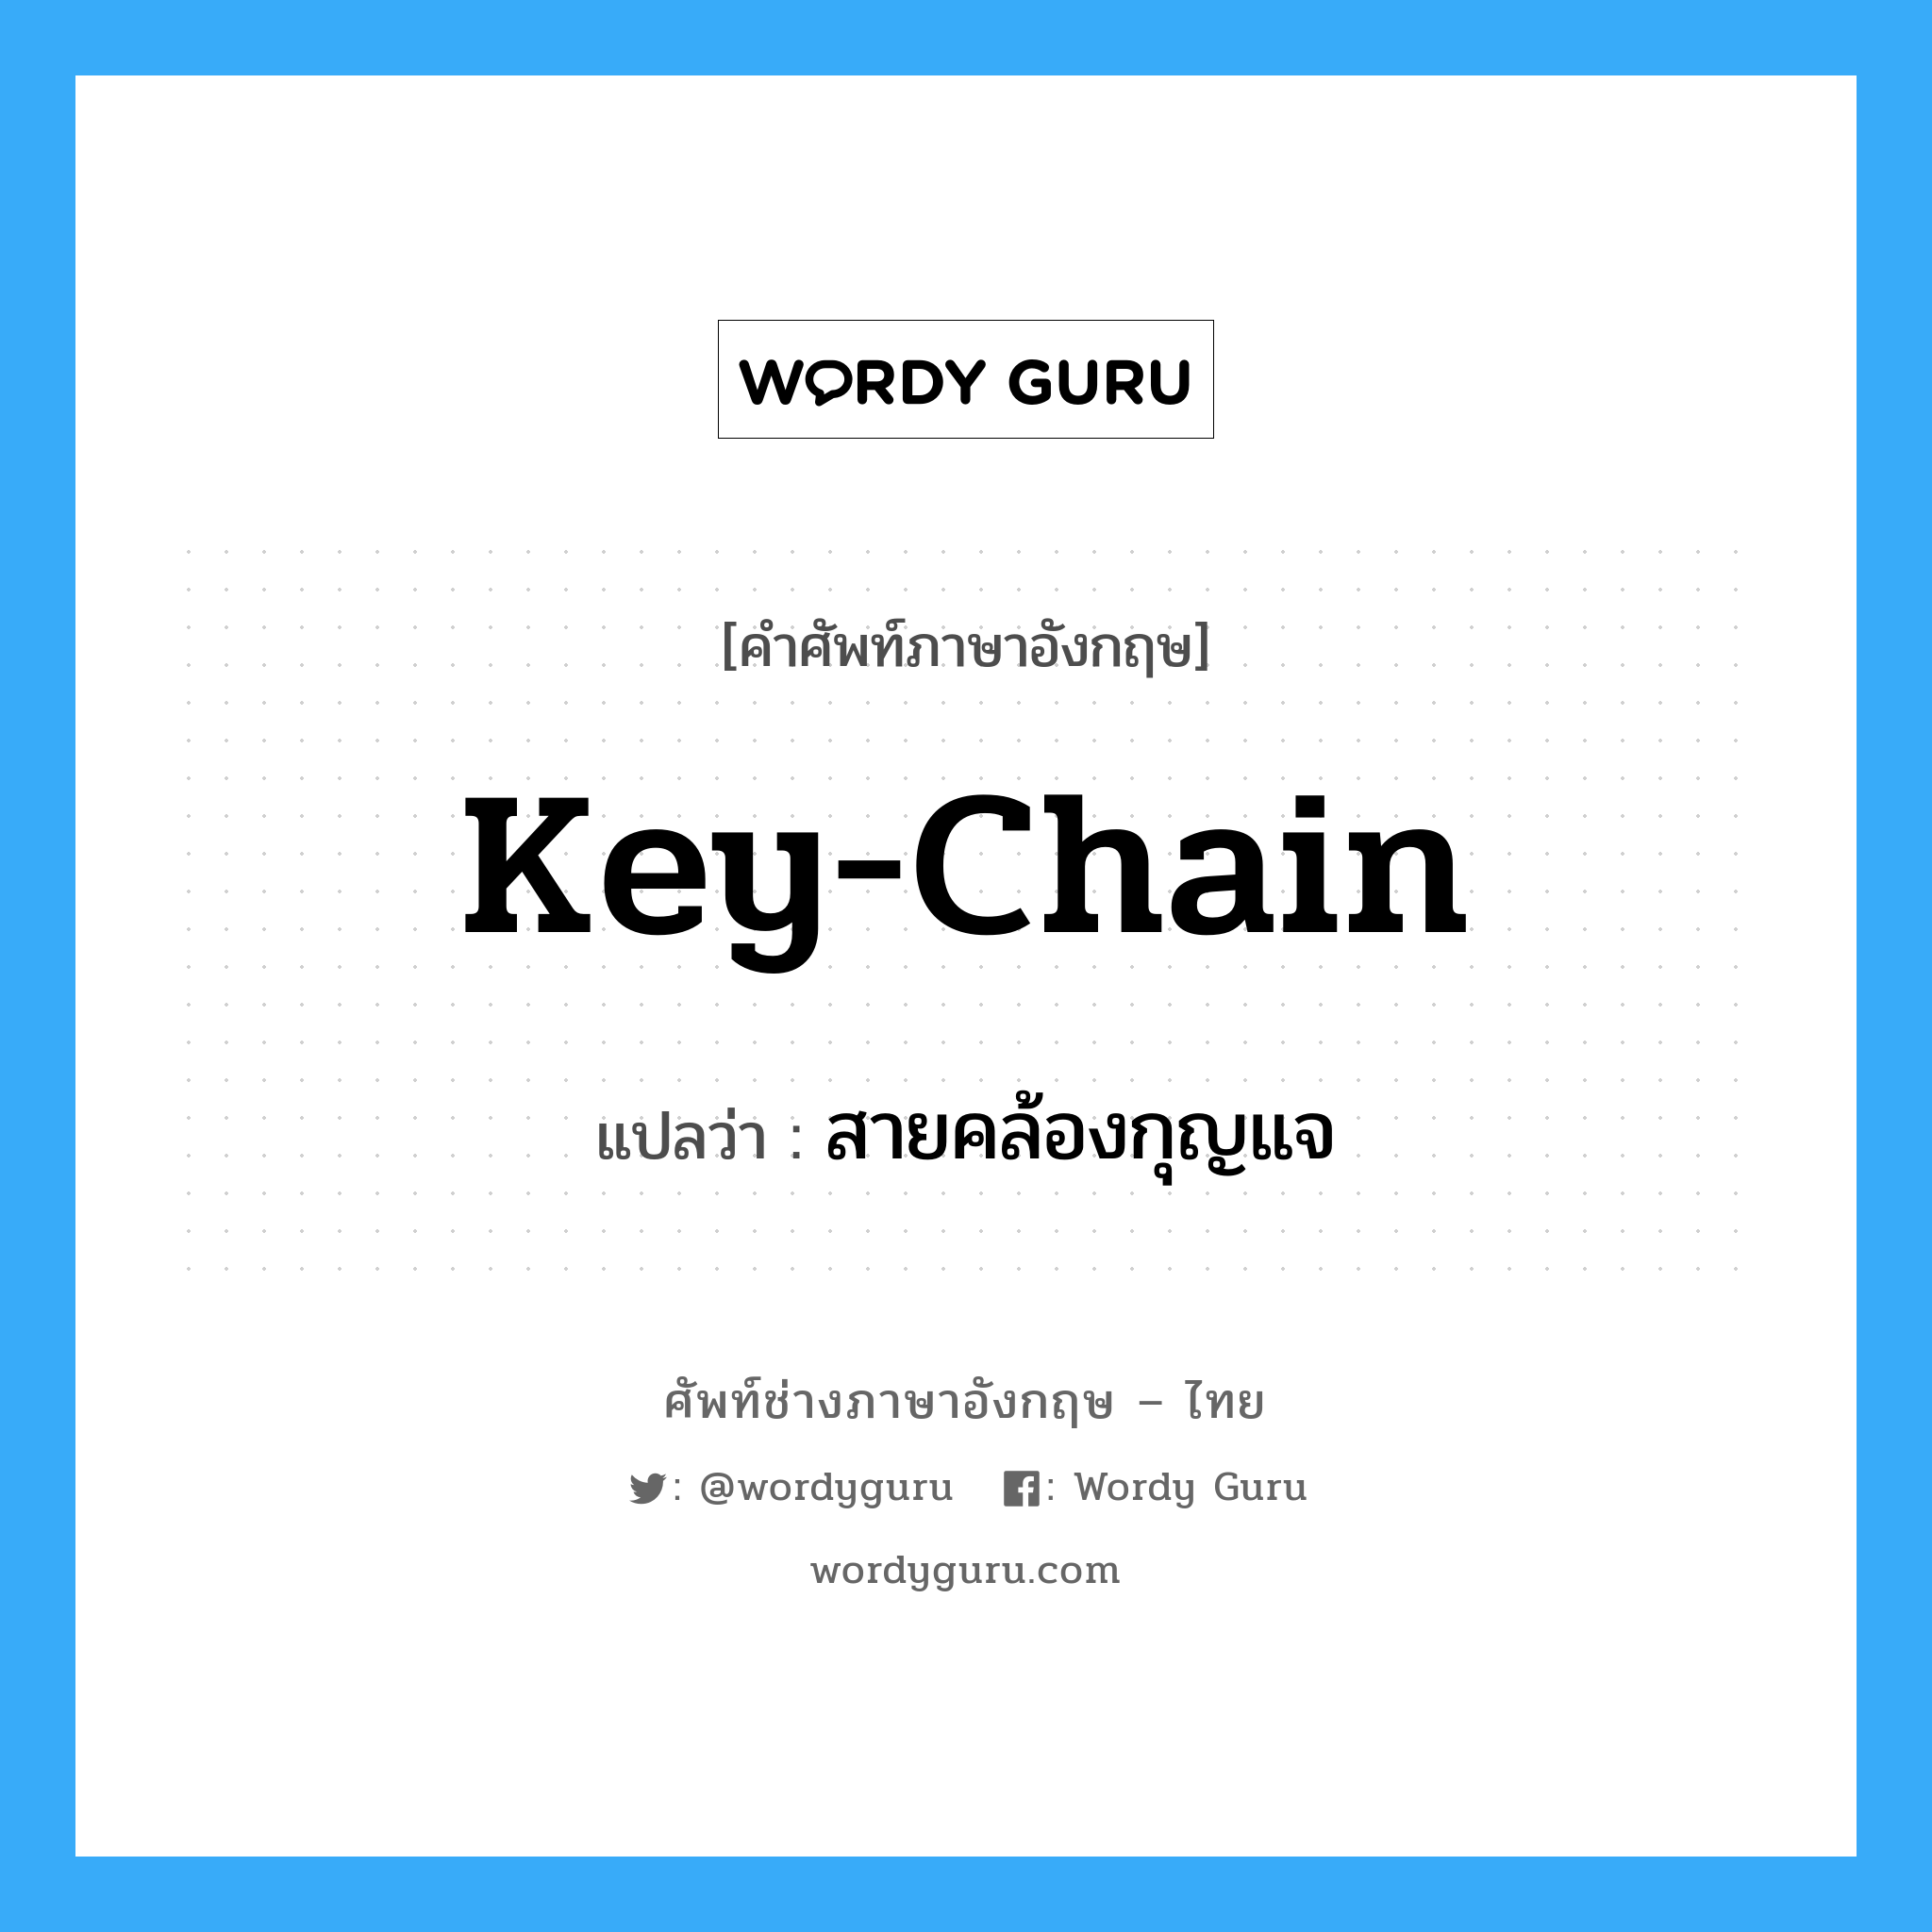 สายคล้องกุญแจ ภาษาอังกฤษ?, คำศัพท์ช่างภาษาอังกฤษ - ไทย สายคล้องกุญแจ คำศัพท์ภาษาอังกฤษ สายคล้องกุญแจ แปลว่า key-chain